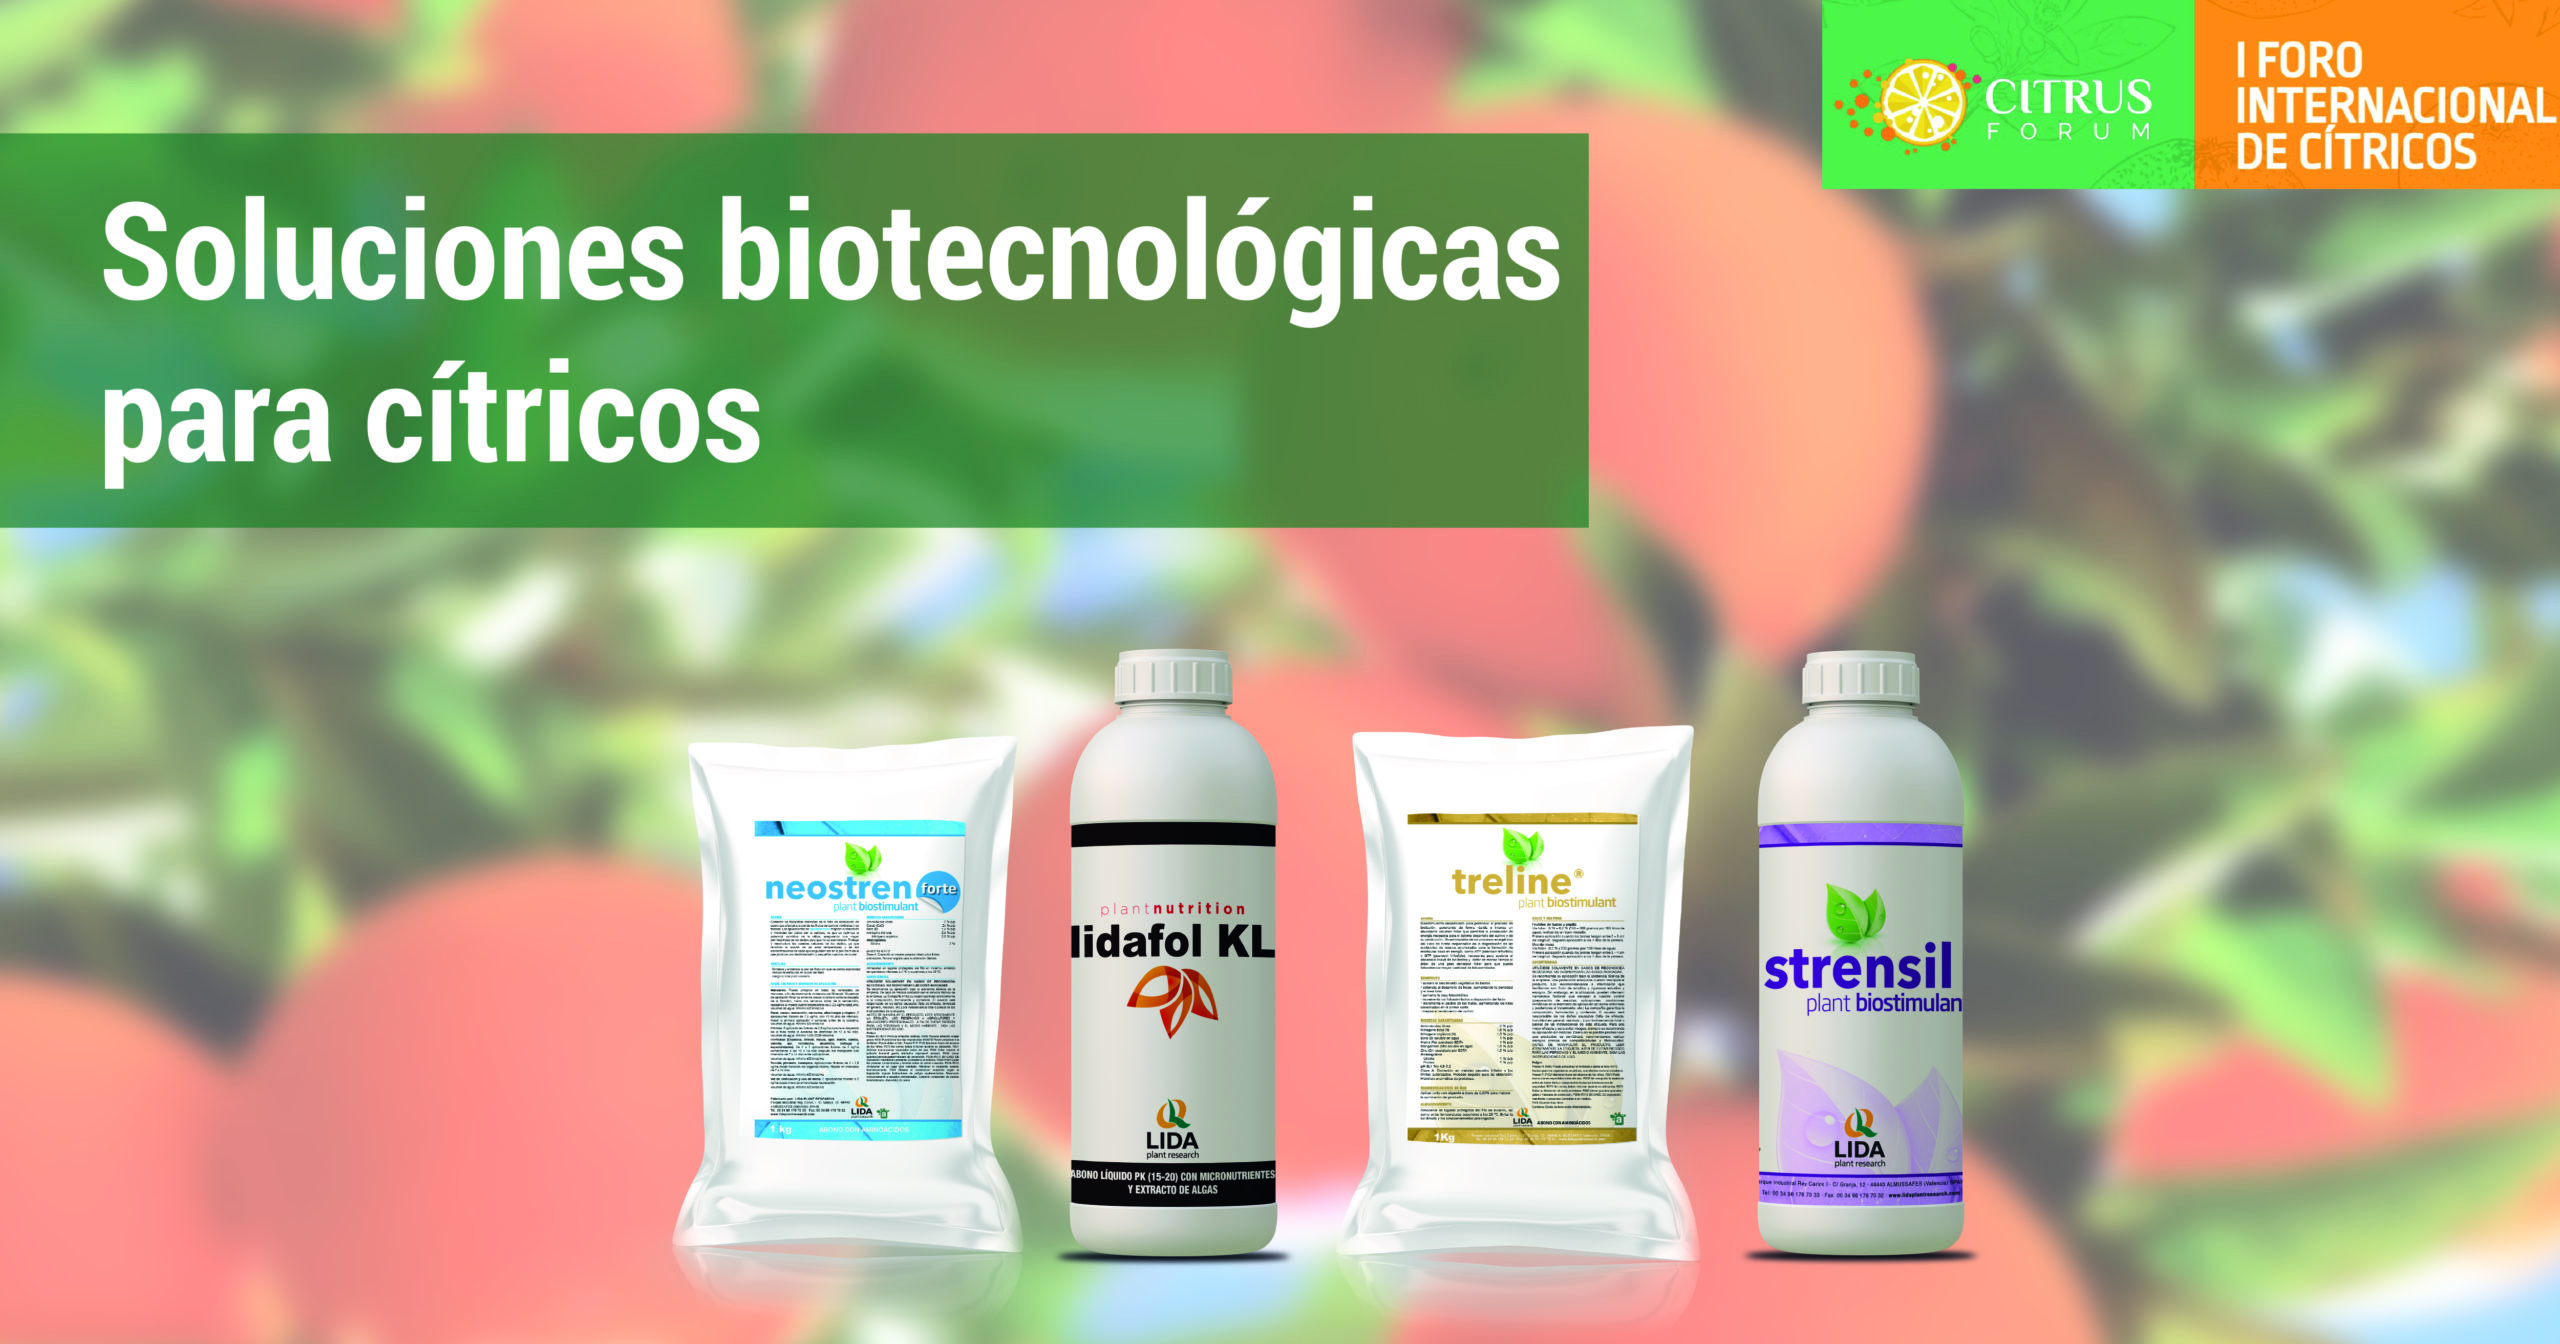 LIDA presentará sus soluciones biotecnológicas para cítricos en Citrus Forum